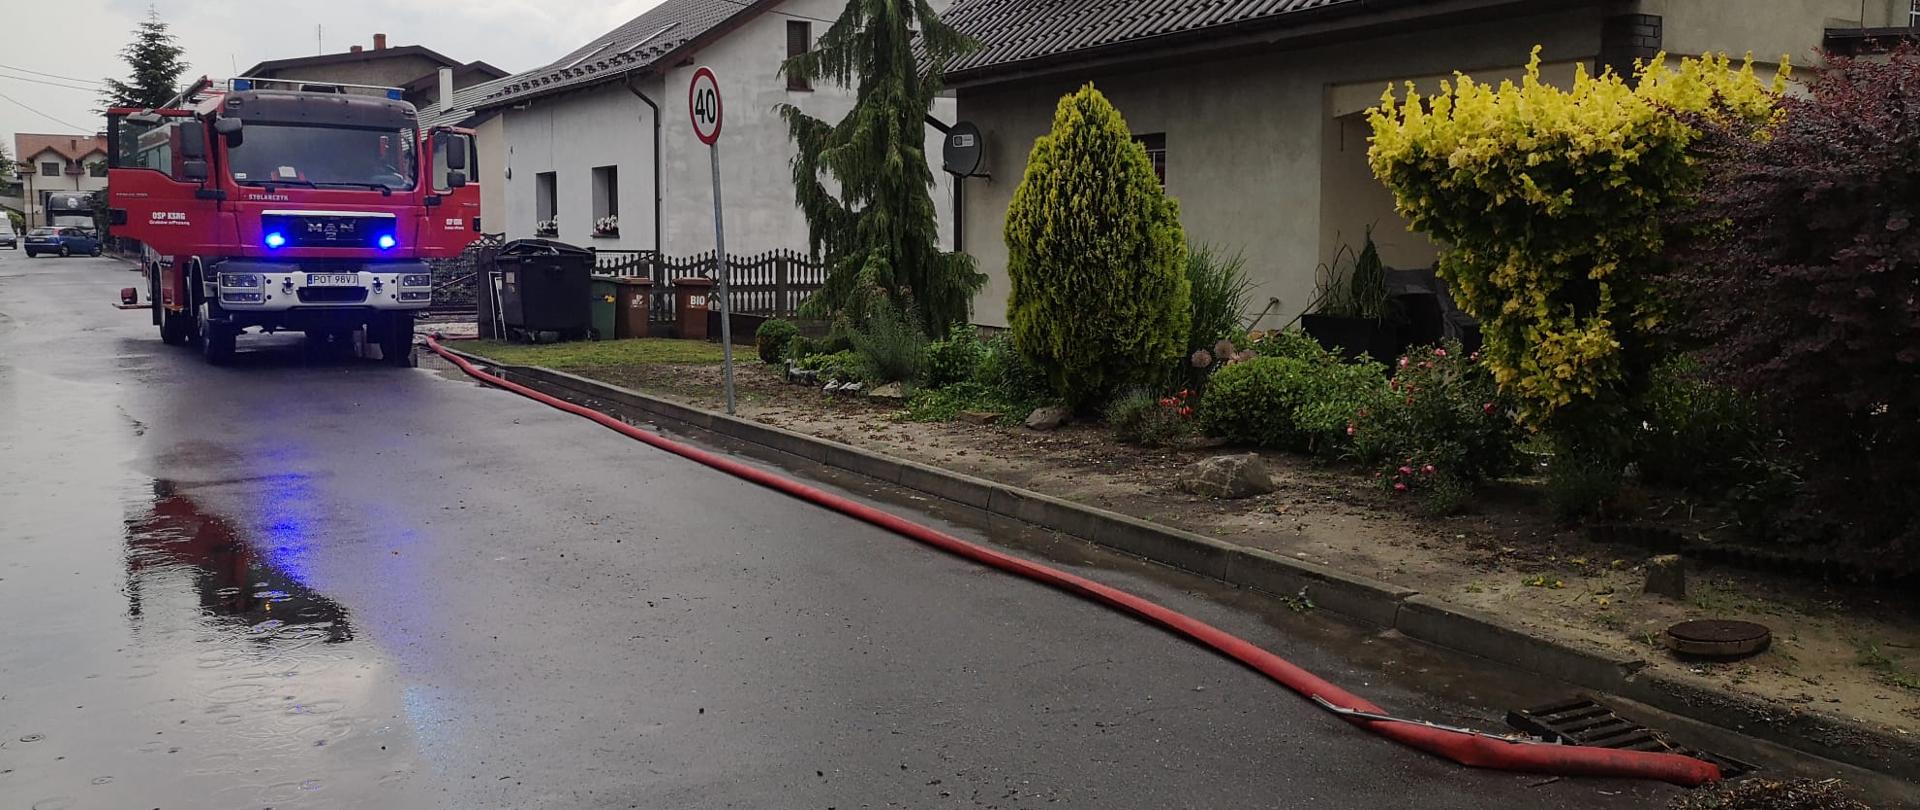 Samochód strażacki stoi na drodze , wzdłuż której rozłożony jest wąż odprowadzający wodę z zalanej posesji. Po prawej stronie budynek mieszkalny, a przed nim krzewy ozdobne.